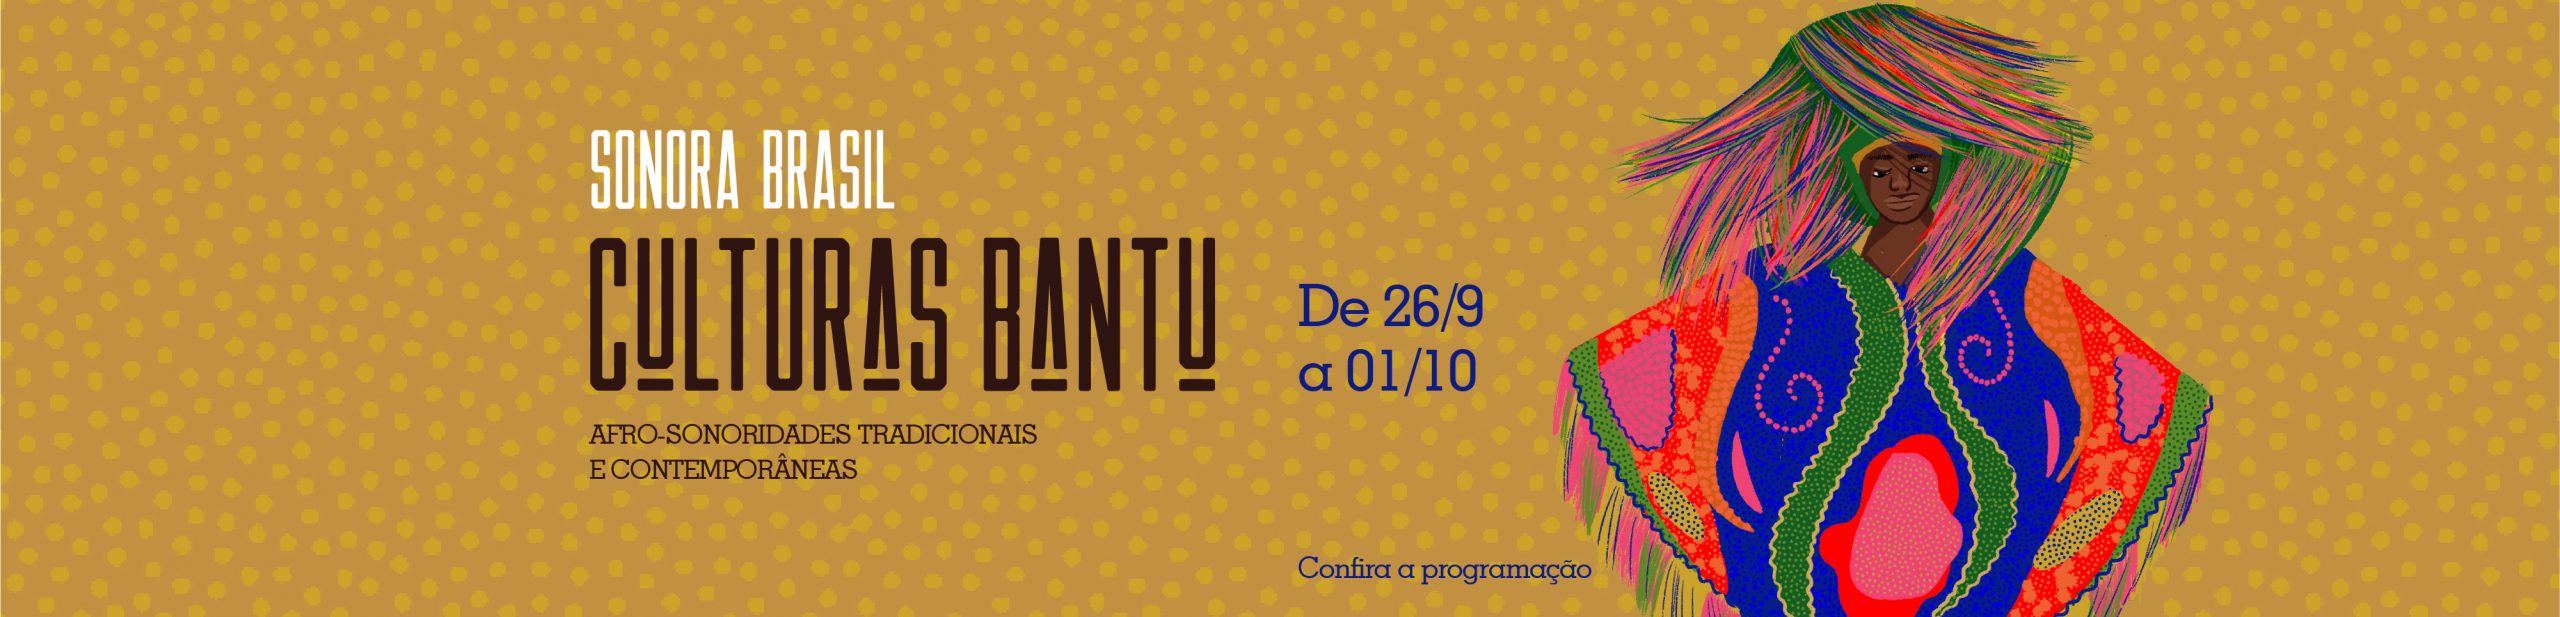 Sonora Brasil – Culturas Bantu Afro-Sonoridades Tradicionais e Contemporâneas.